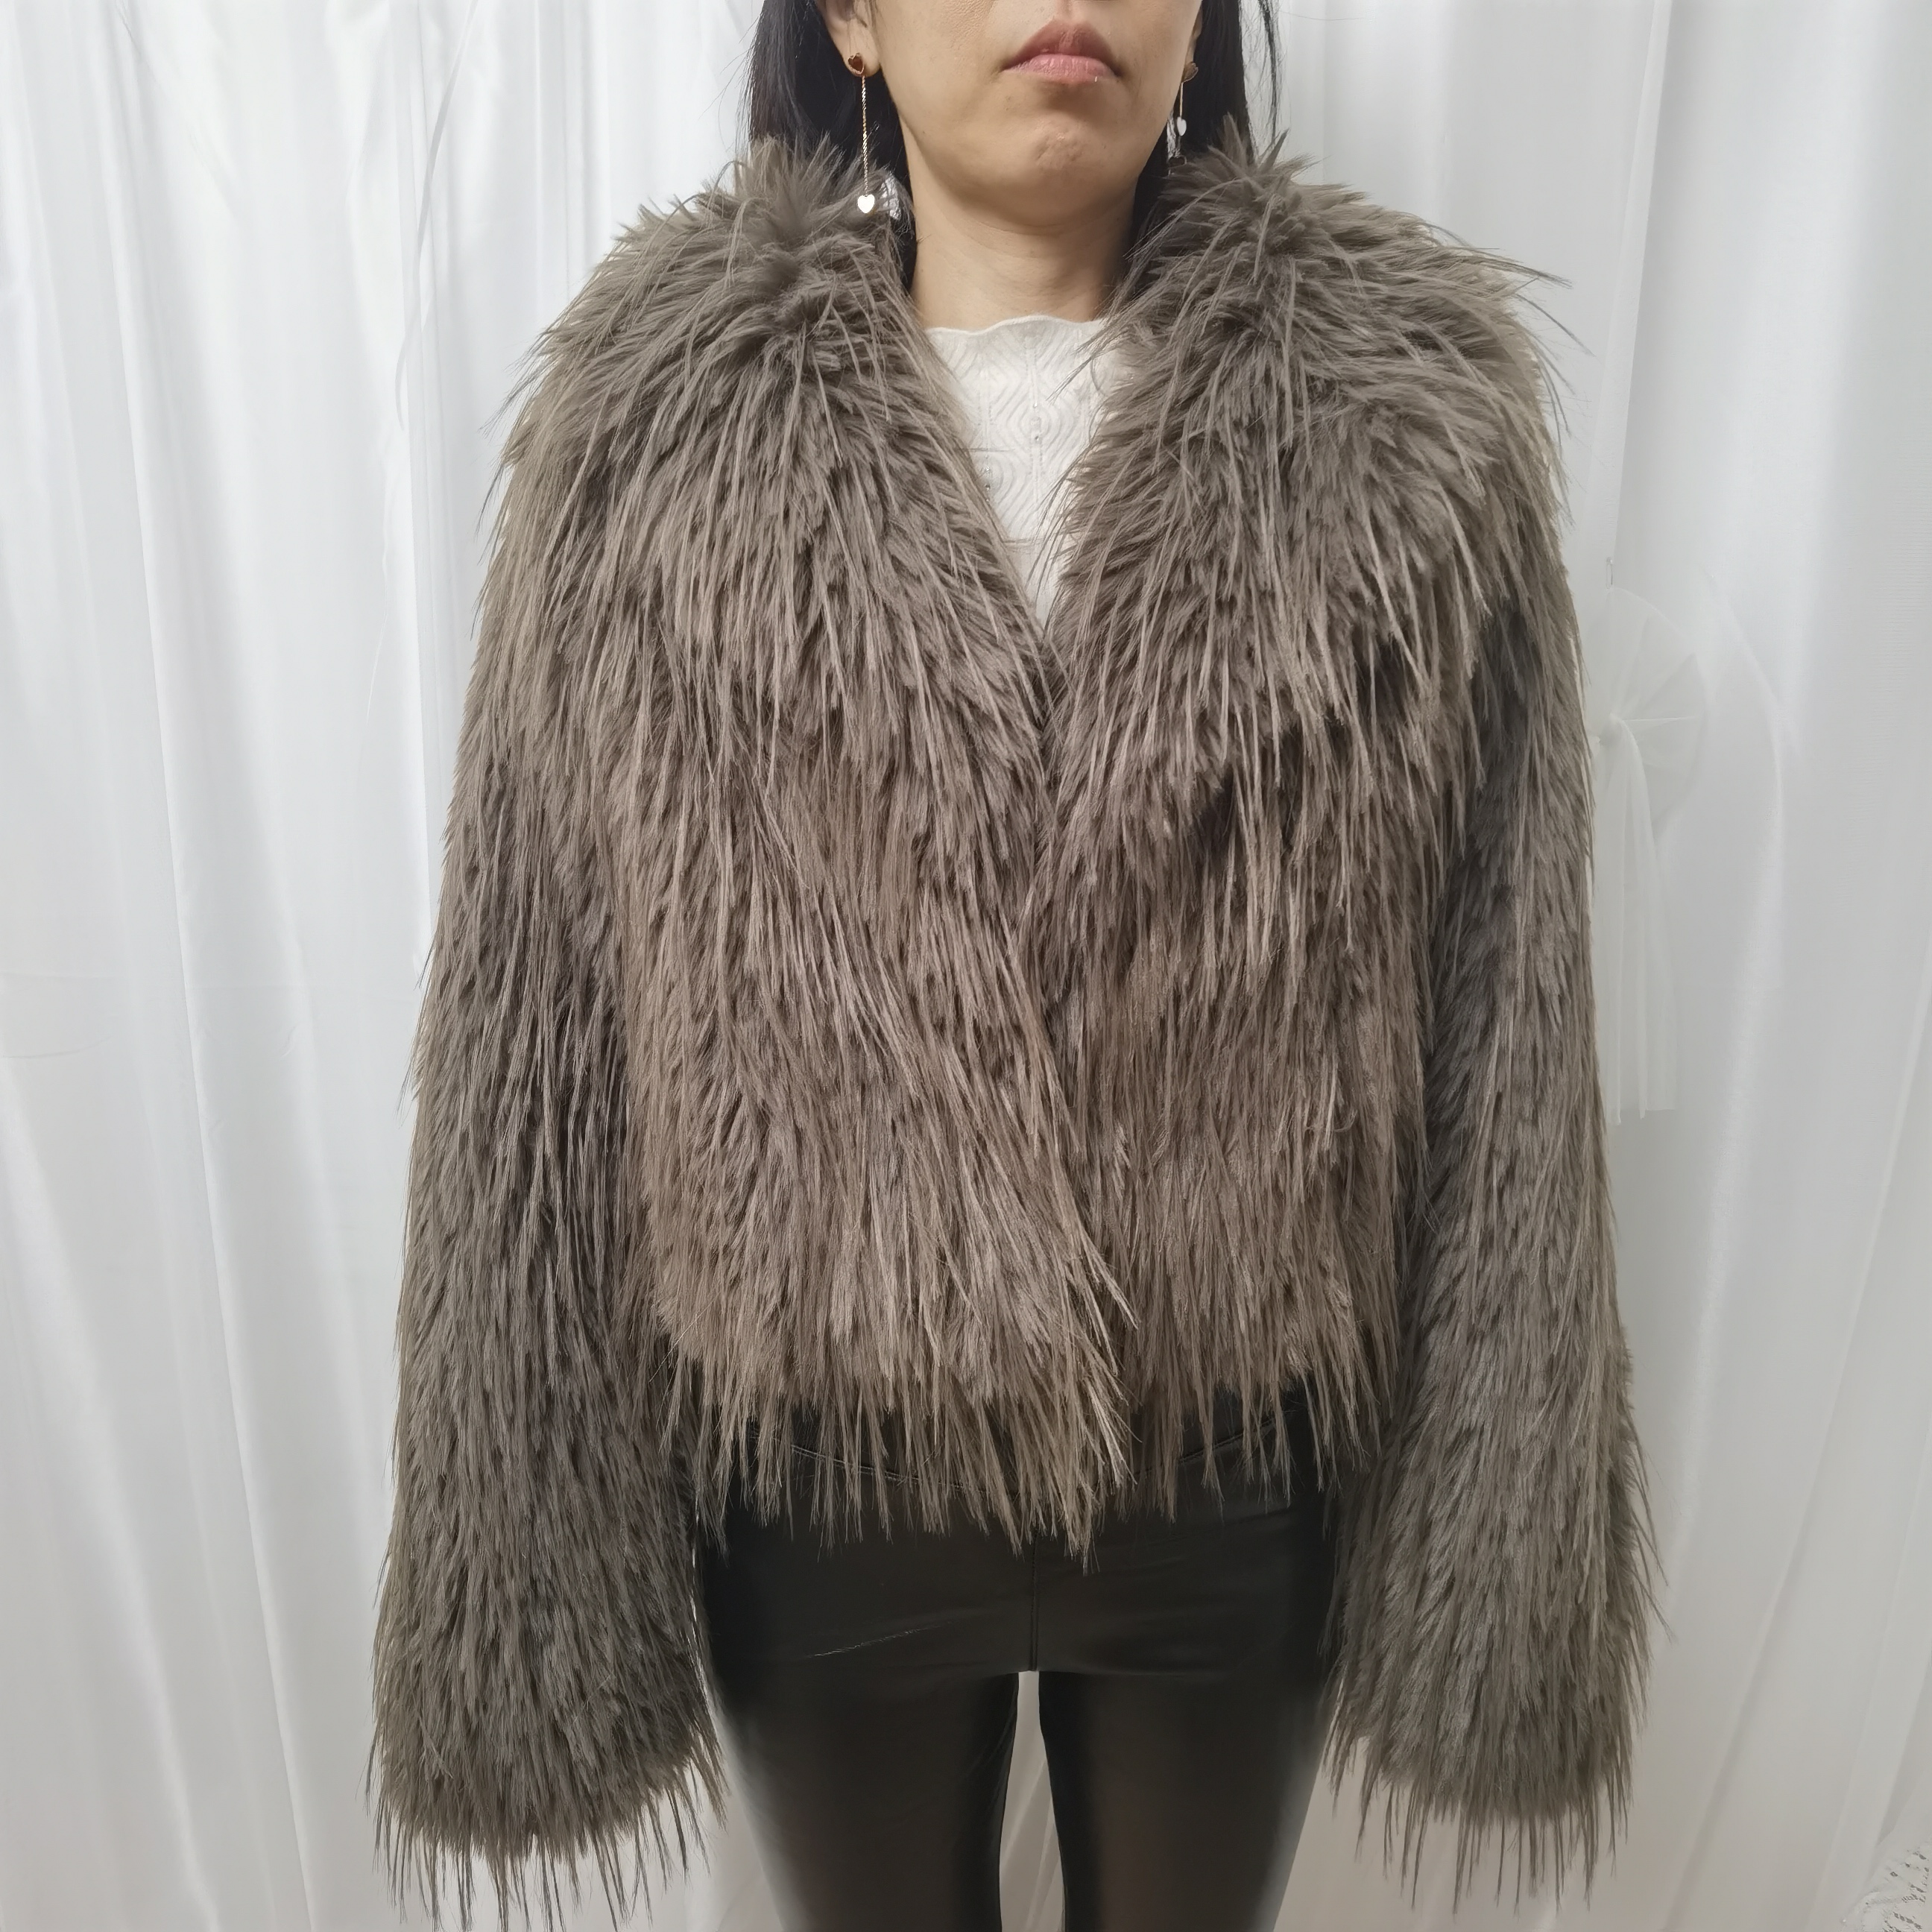 2022 Fashion Popular custom faux fur jacket